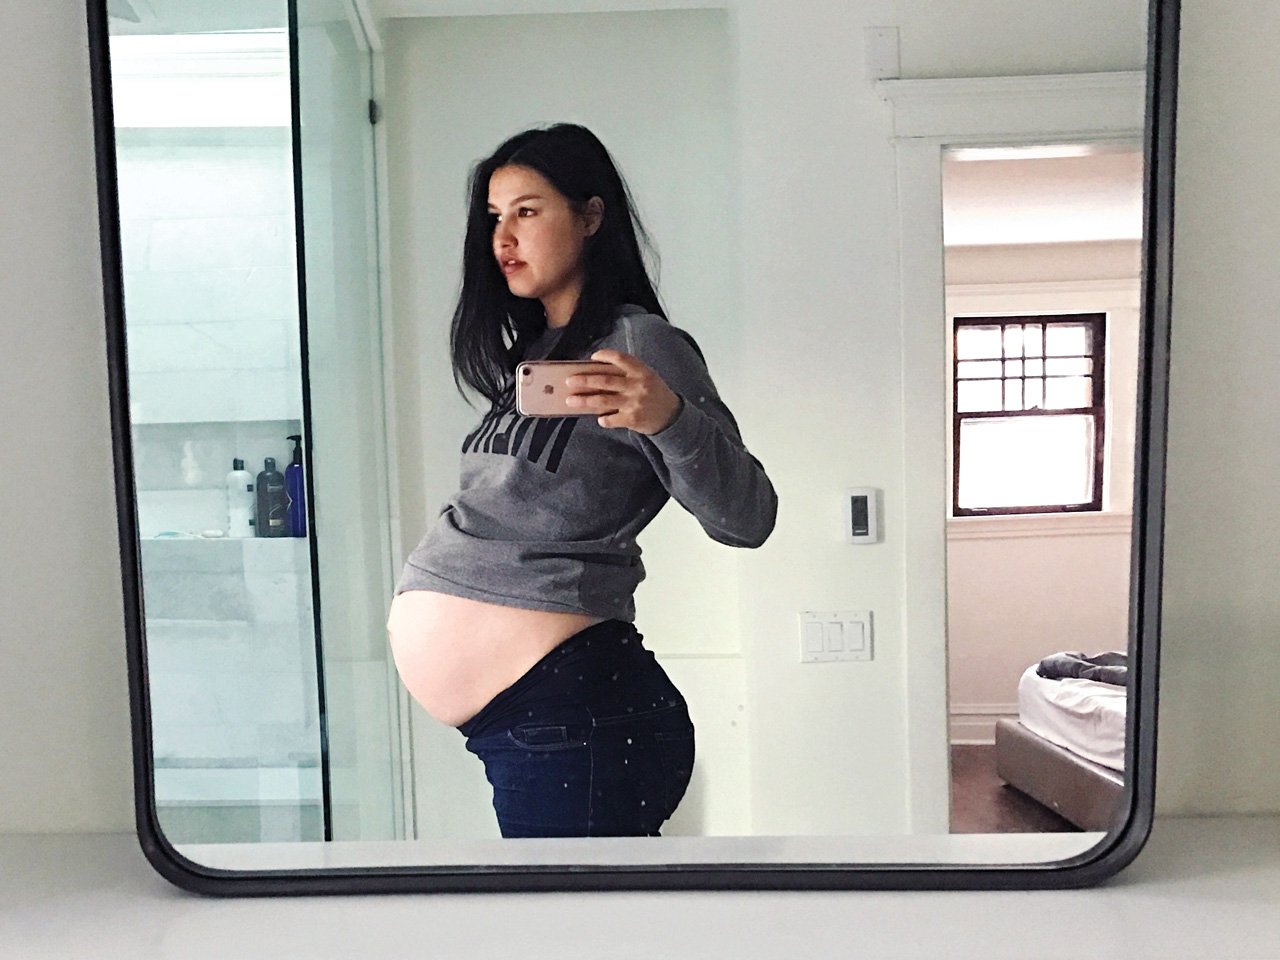 very pregnant woman takes selfie in bathroom mirror